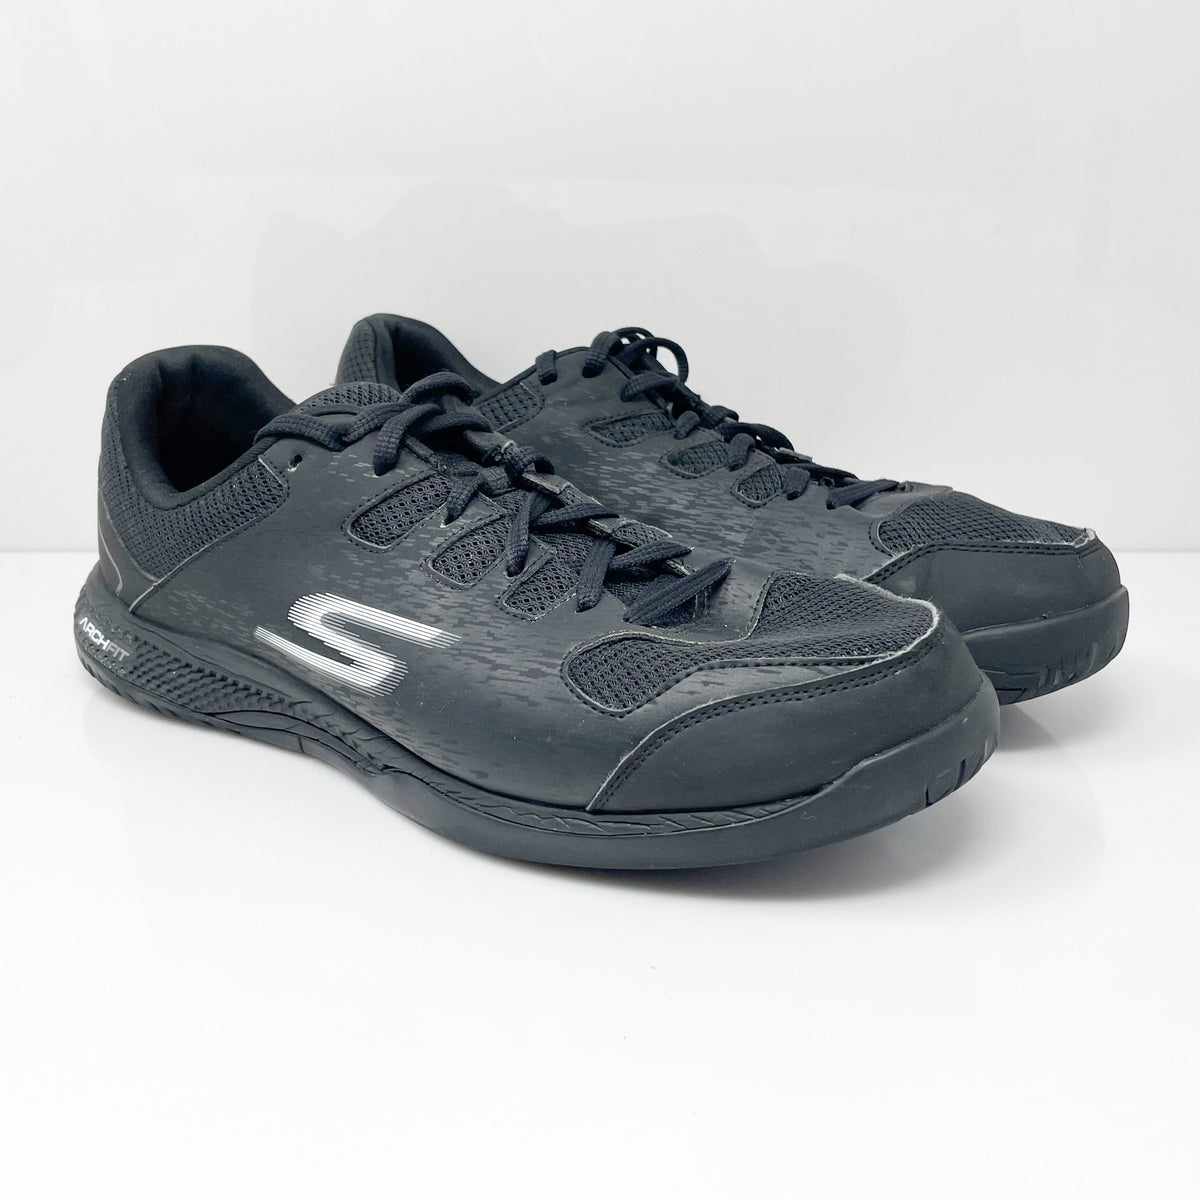 Skechers Mens Viper Court Pickleball 246070 Black Running Shoes Sneake ...